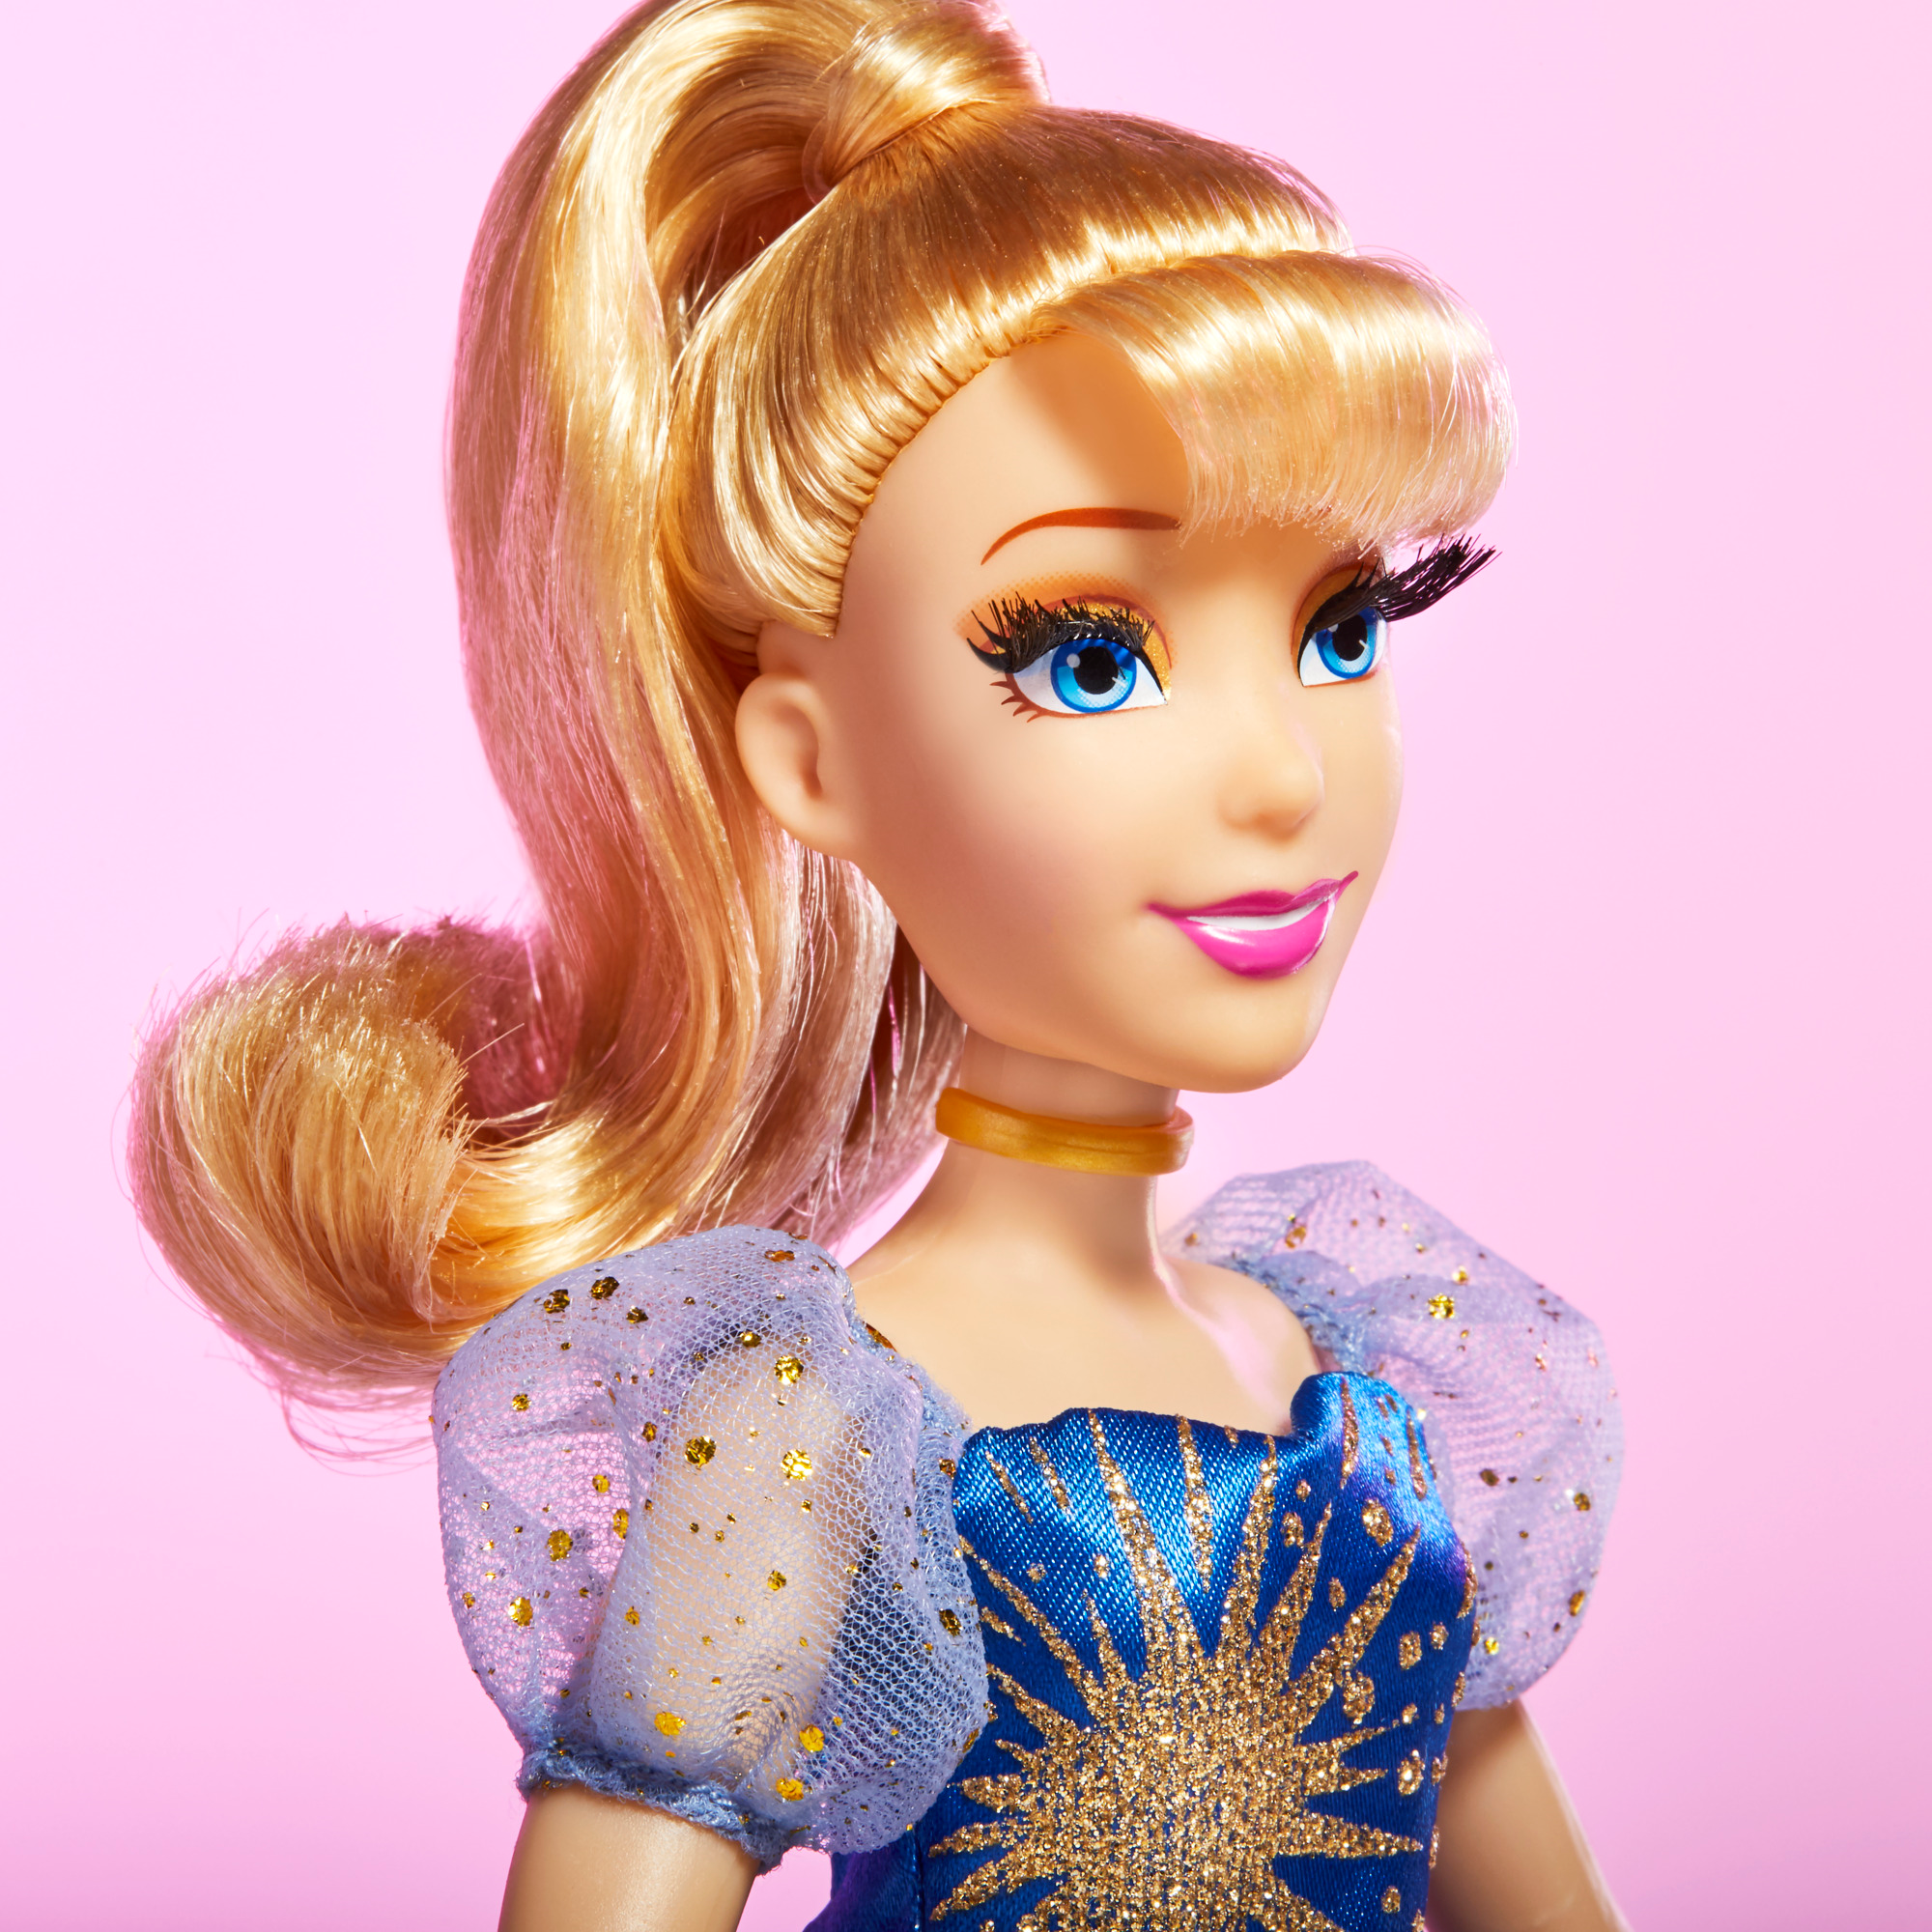 Hasbro disney princess style series, cenerentola princess celebration - DISNEY PRINCESS